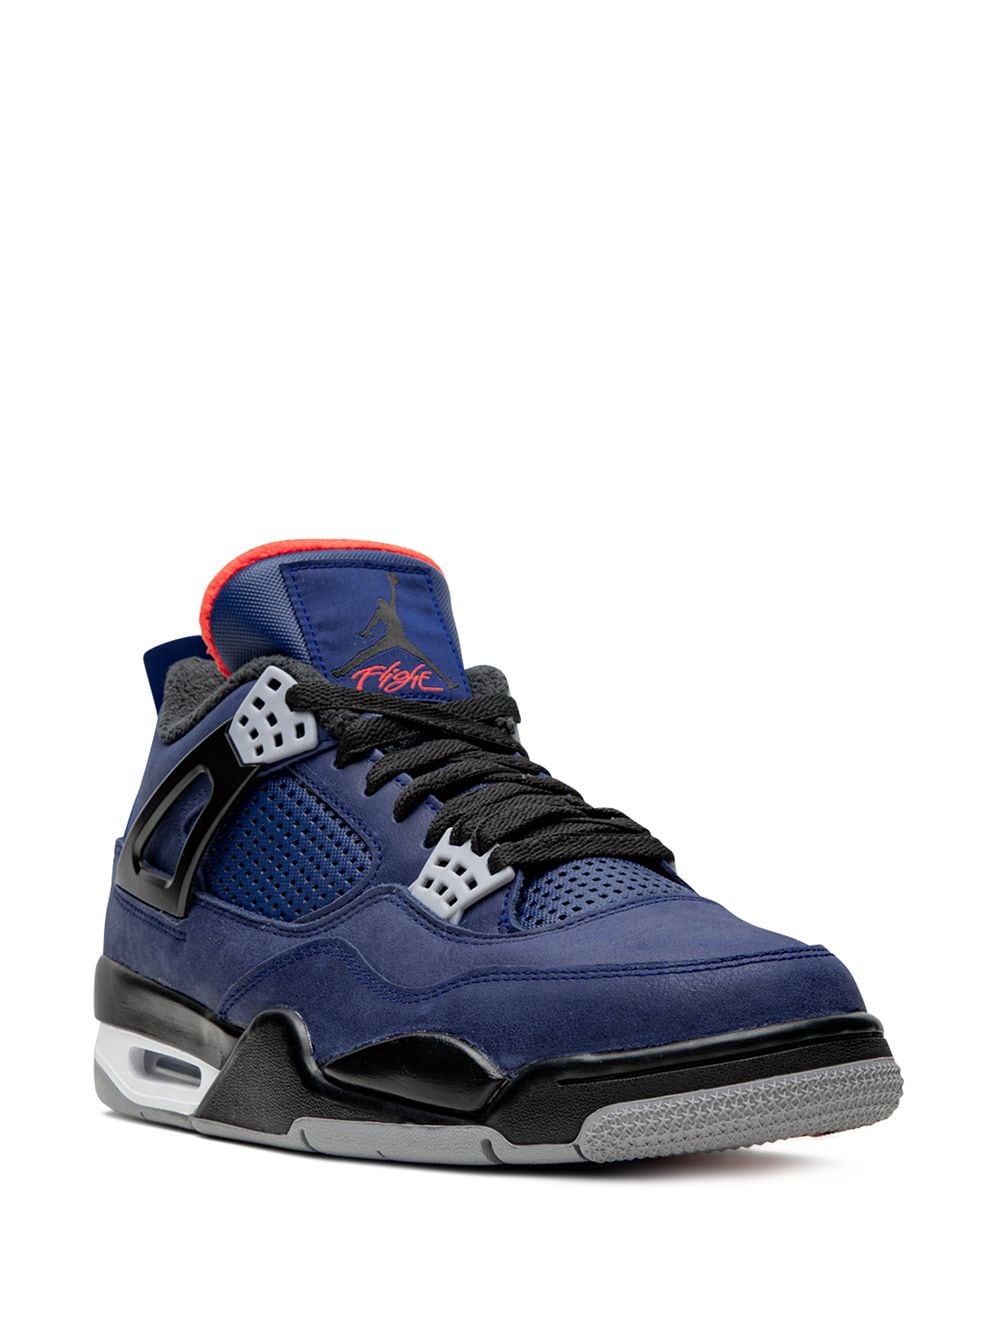  Jordan Air Jordan 4 winterized Loyal Blue Sneakers 